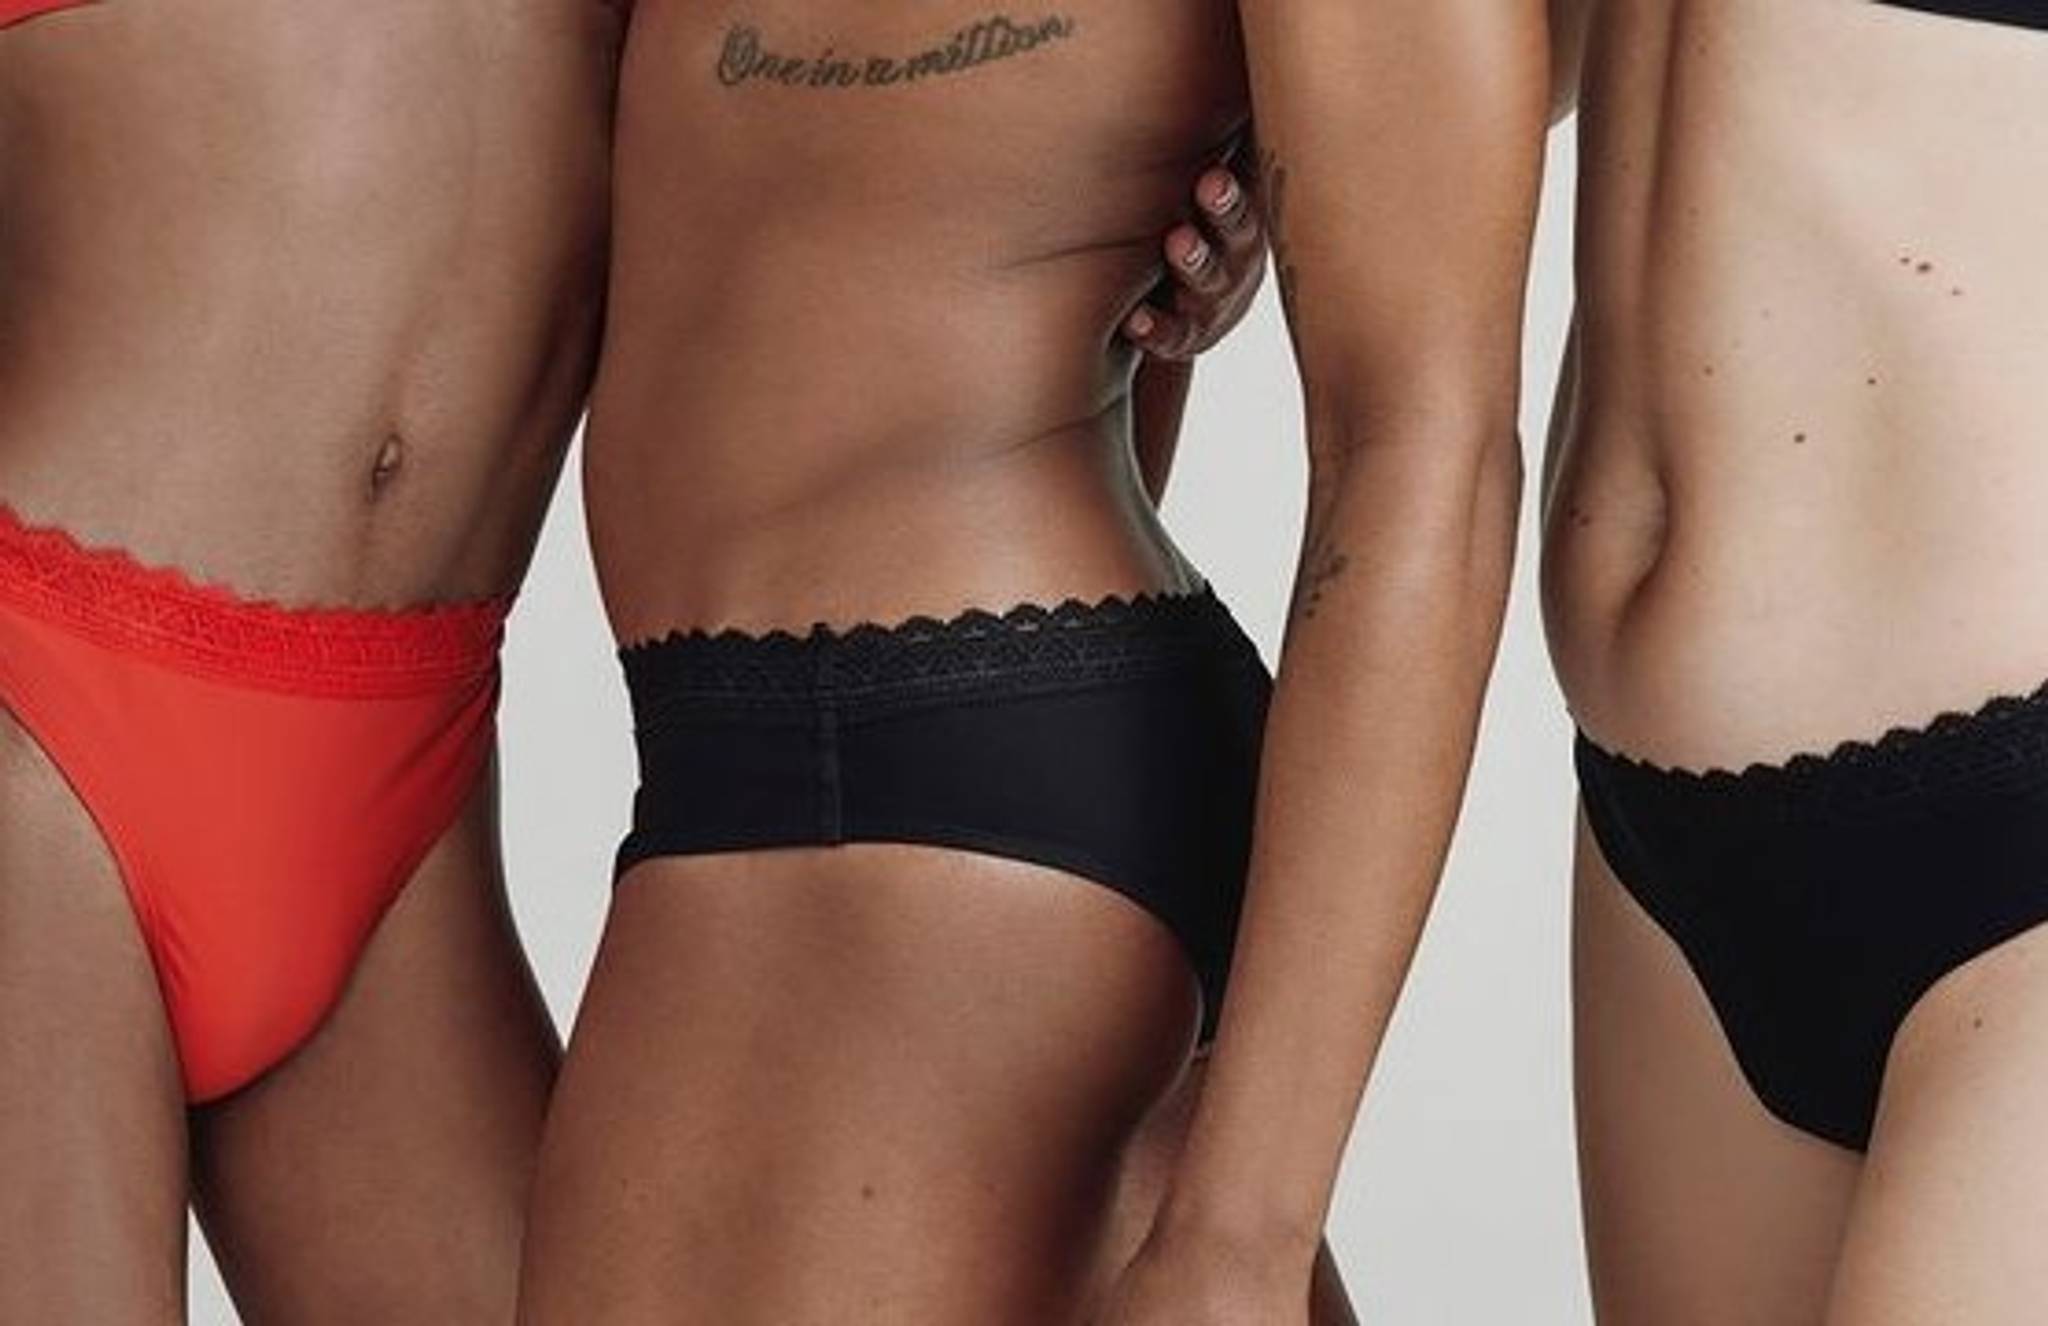 Gender-neutral brands bring fluidity to underwear